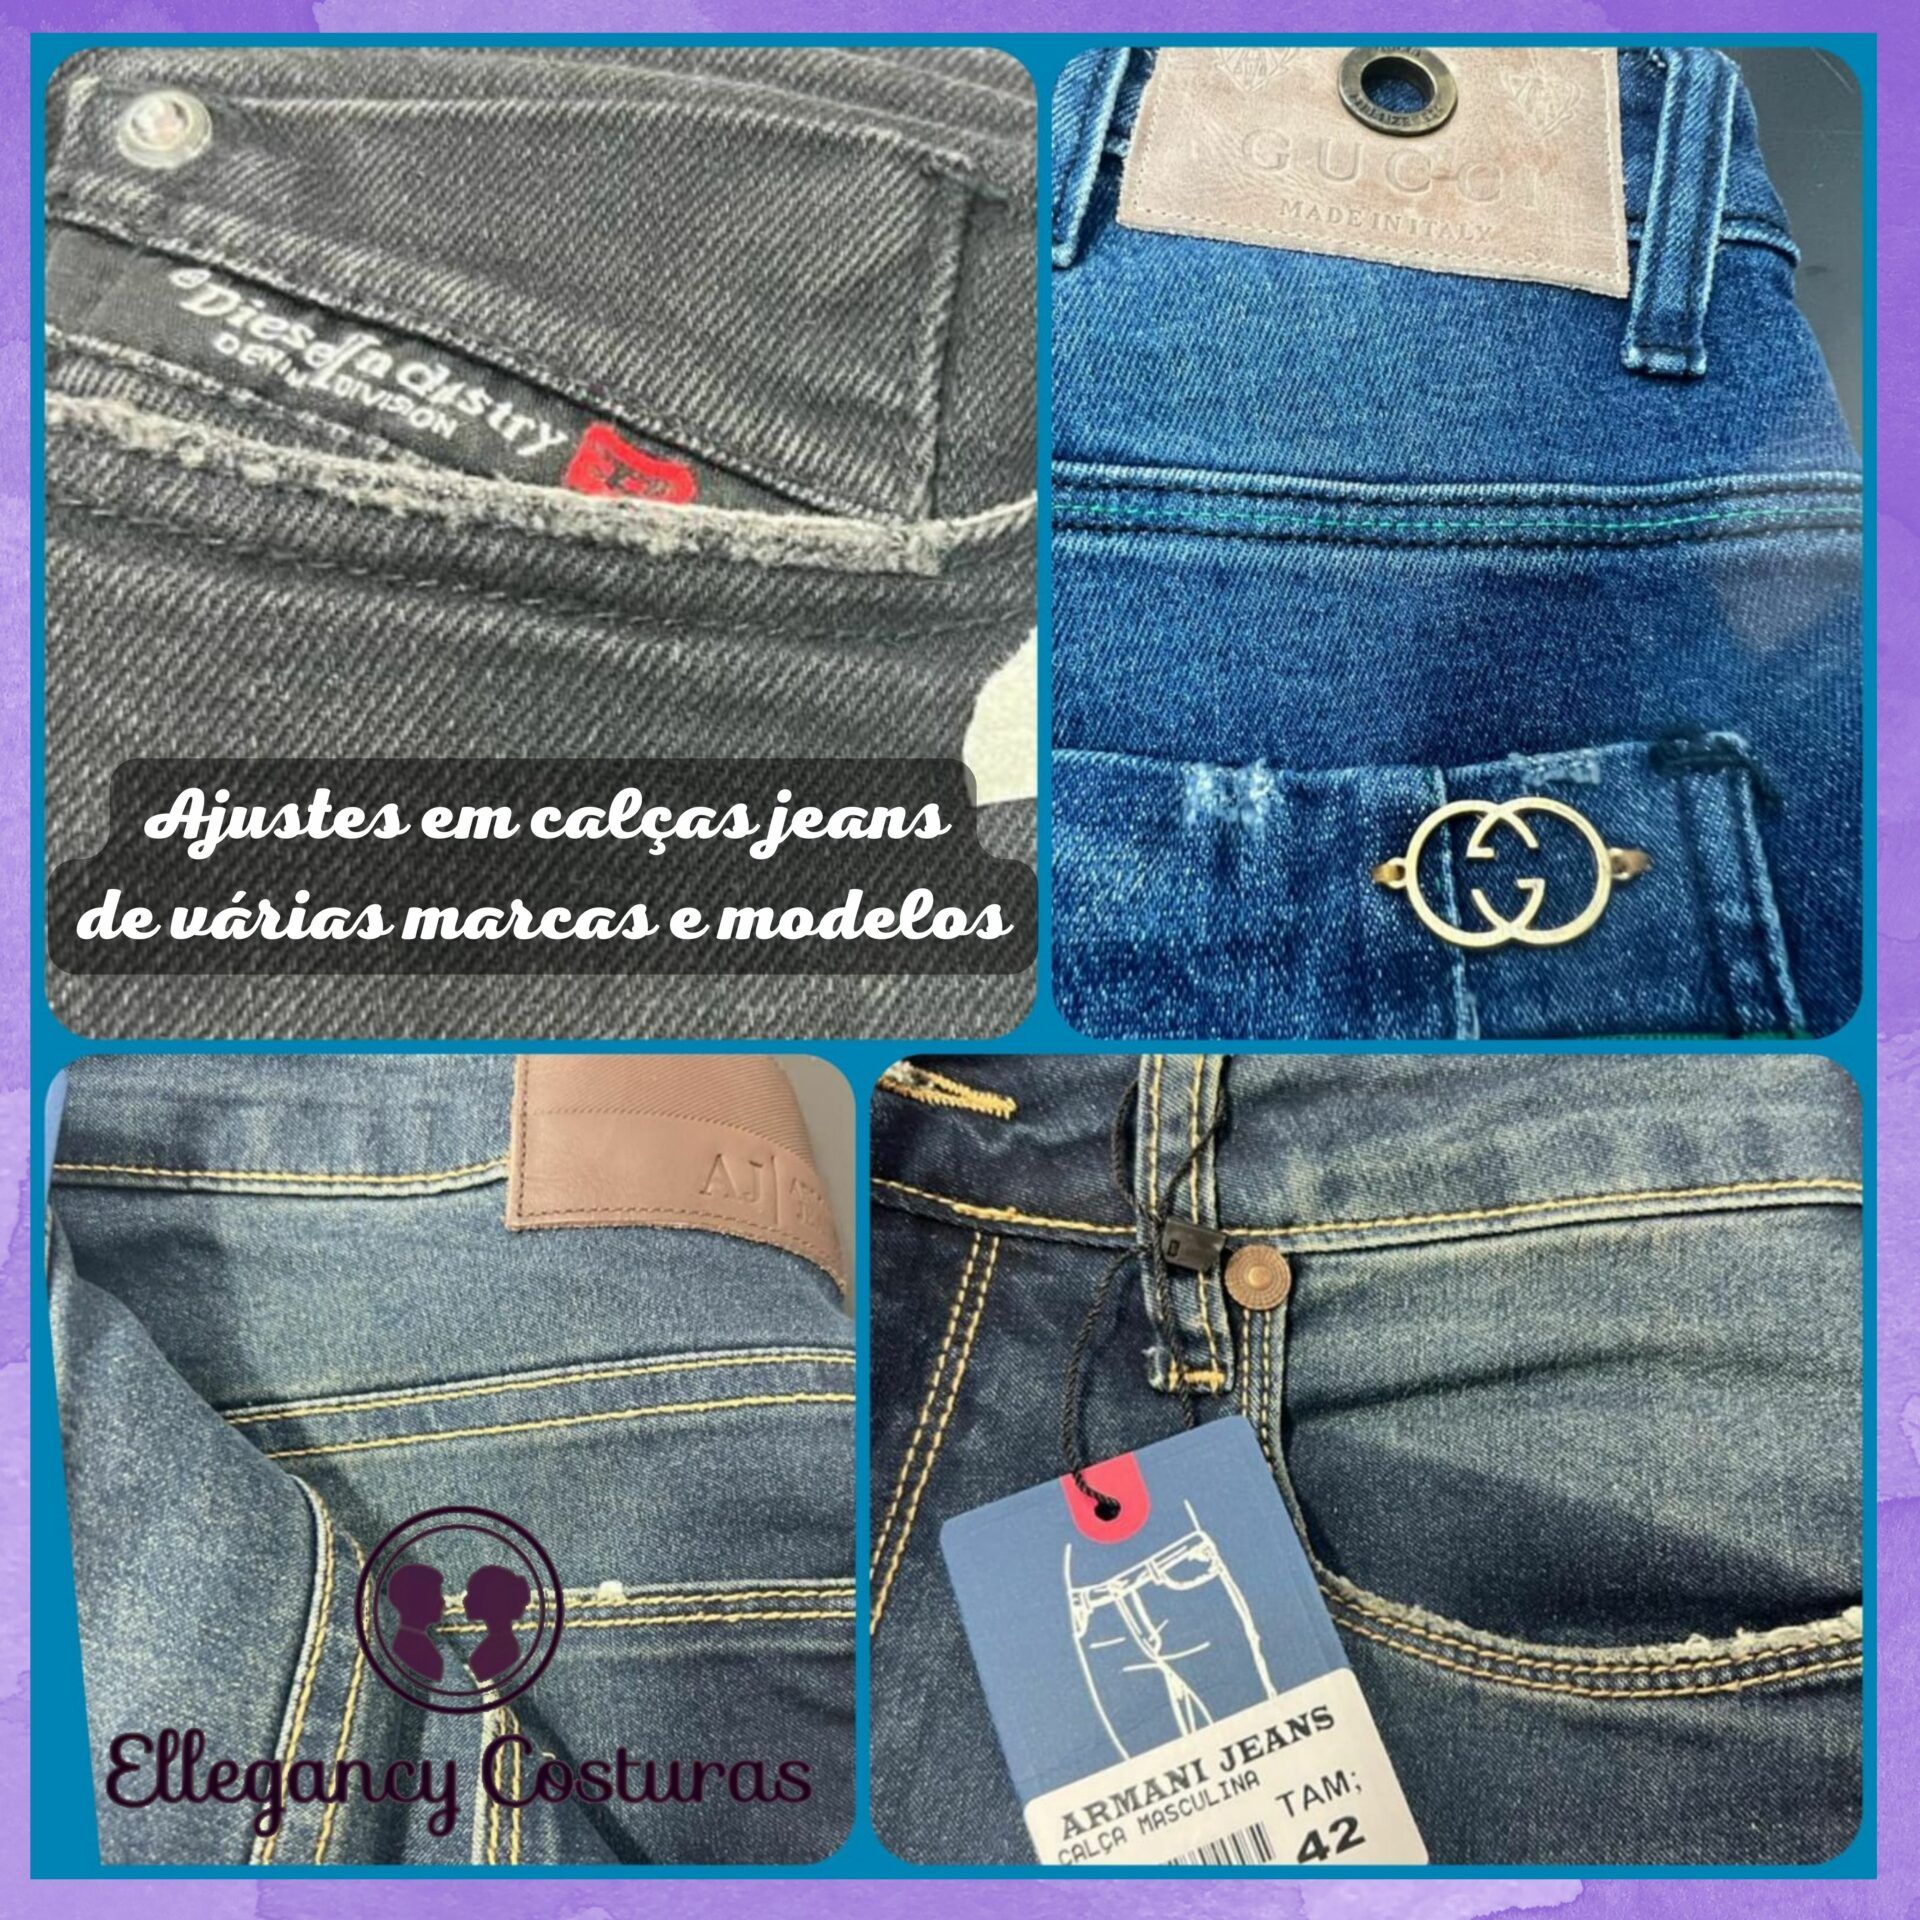 ajustes em calcas jeans de varias marcas e modelos